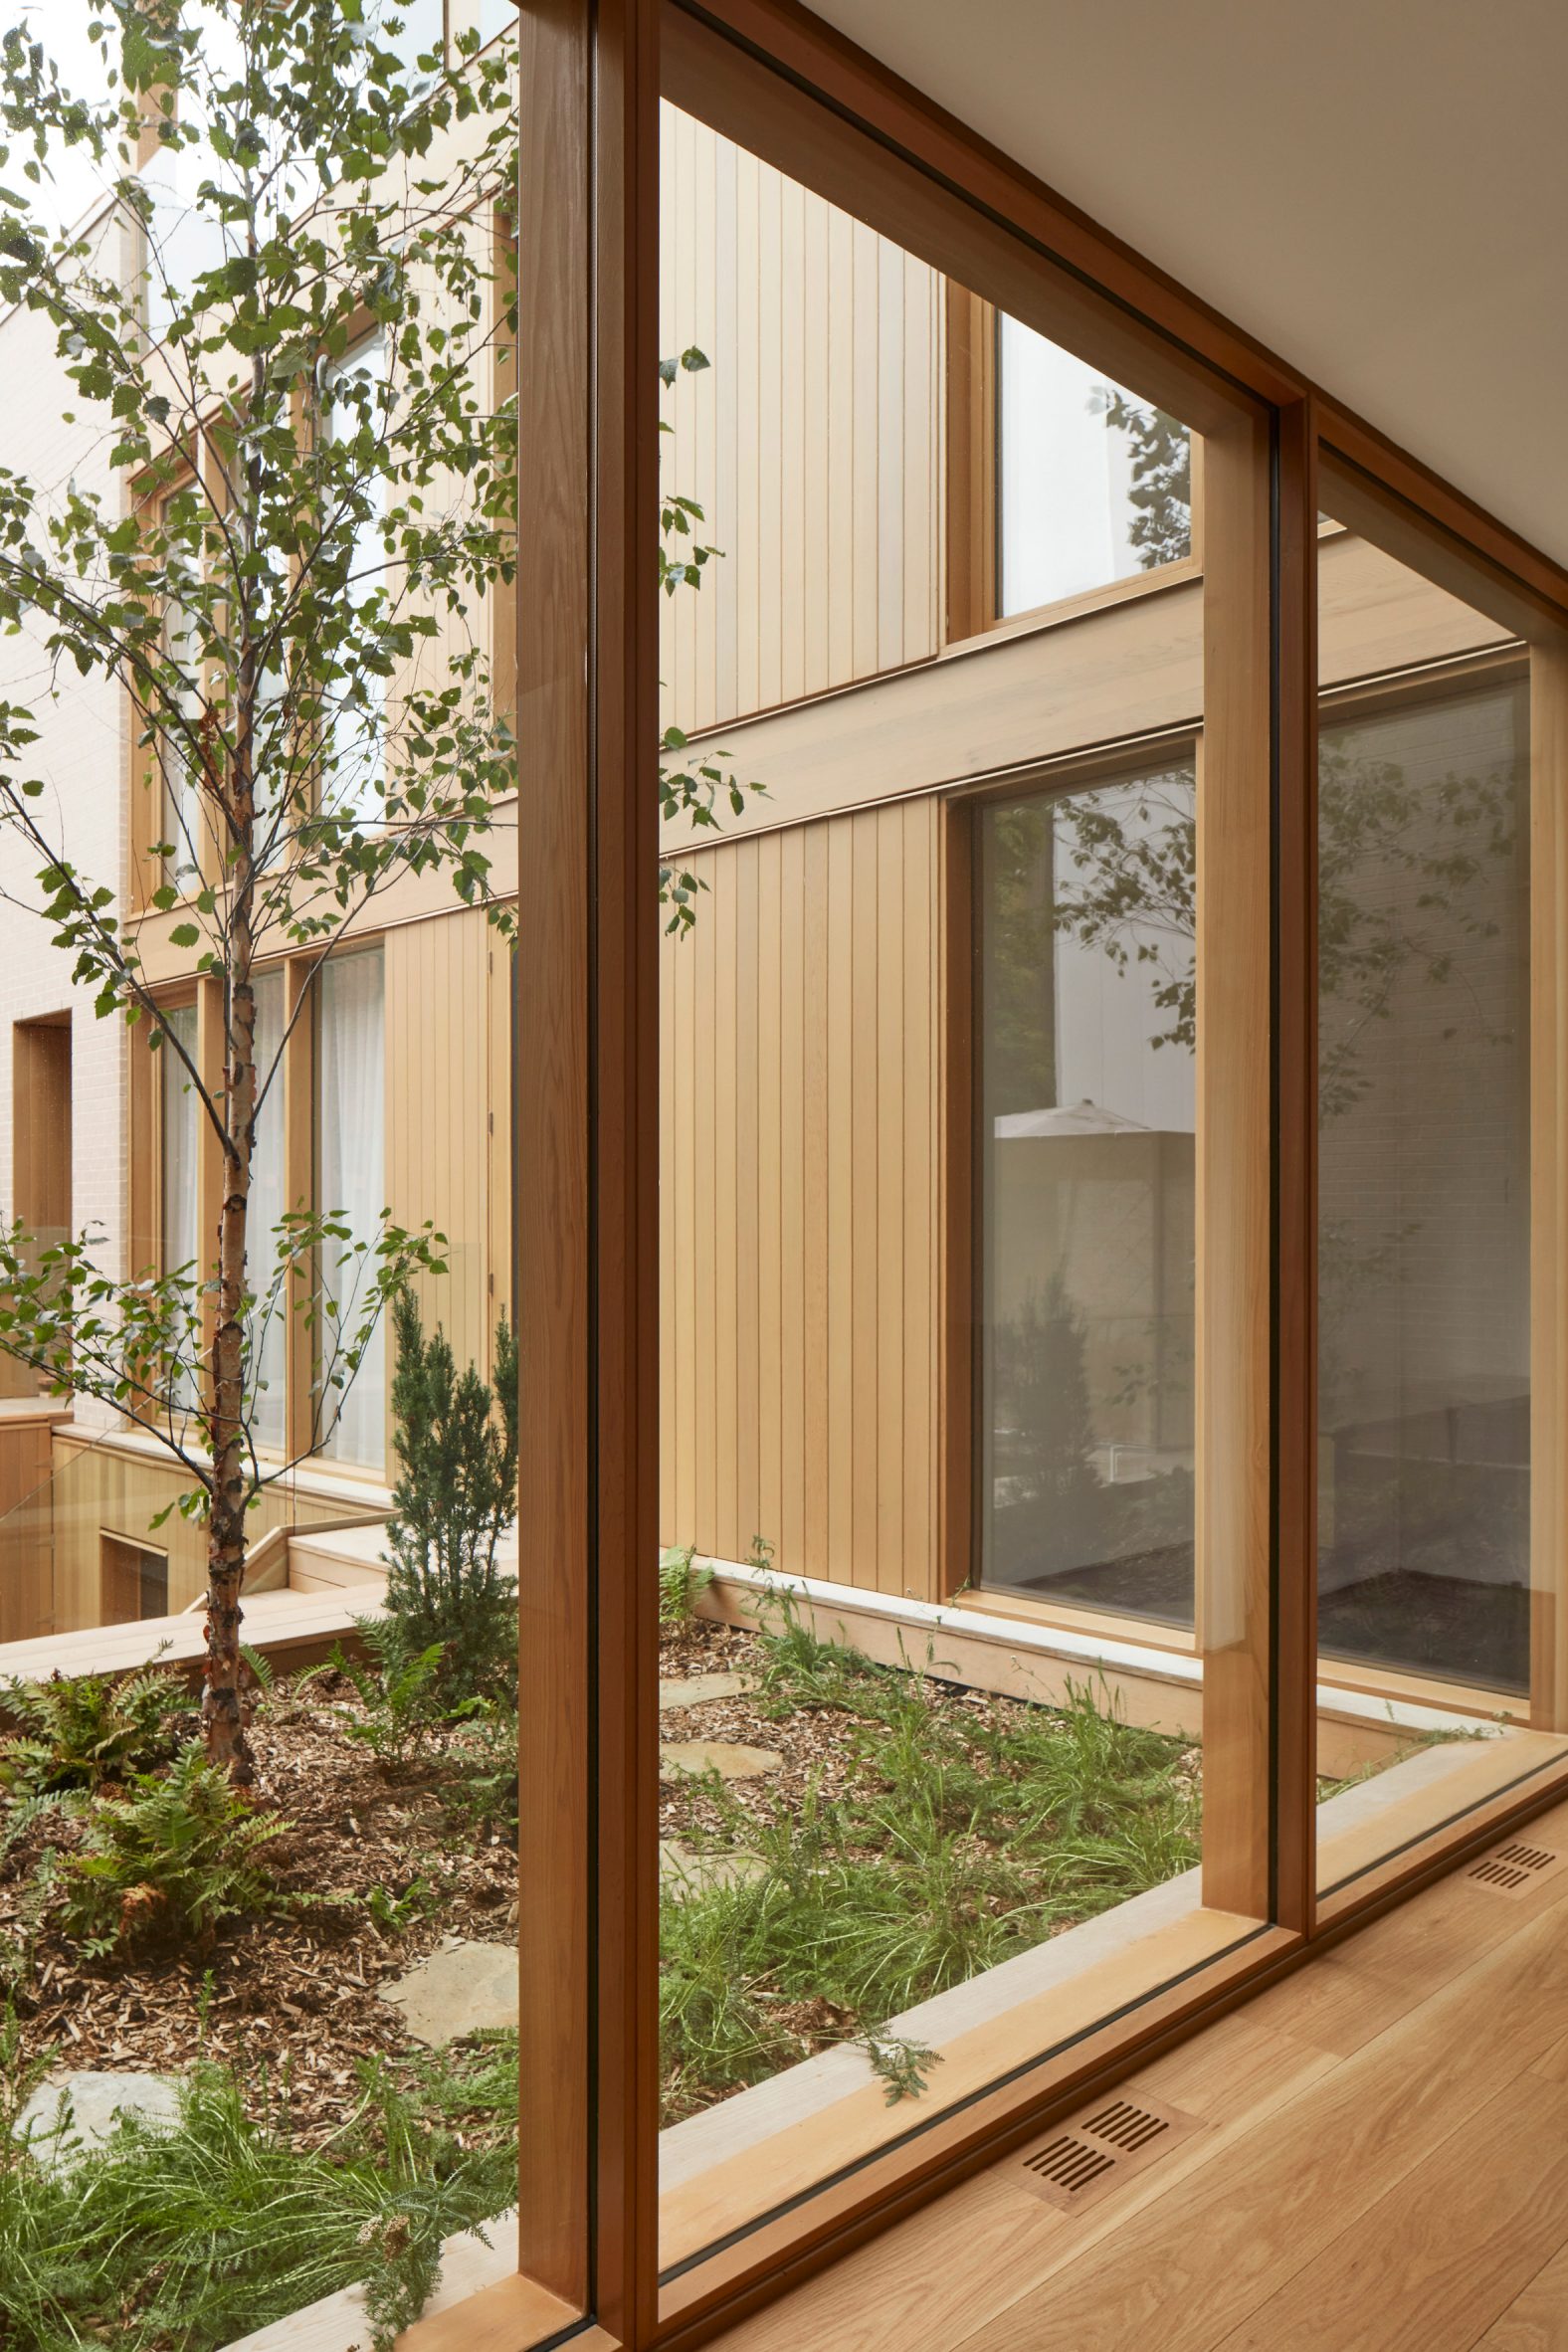 maison de ville nordique jardin urbain toiture végétale cour intérieure arbre bouleau · Pierre Thibault Architecte